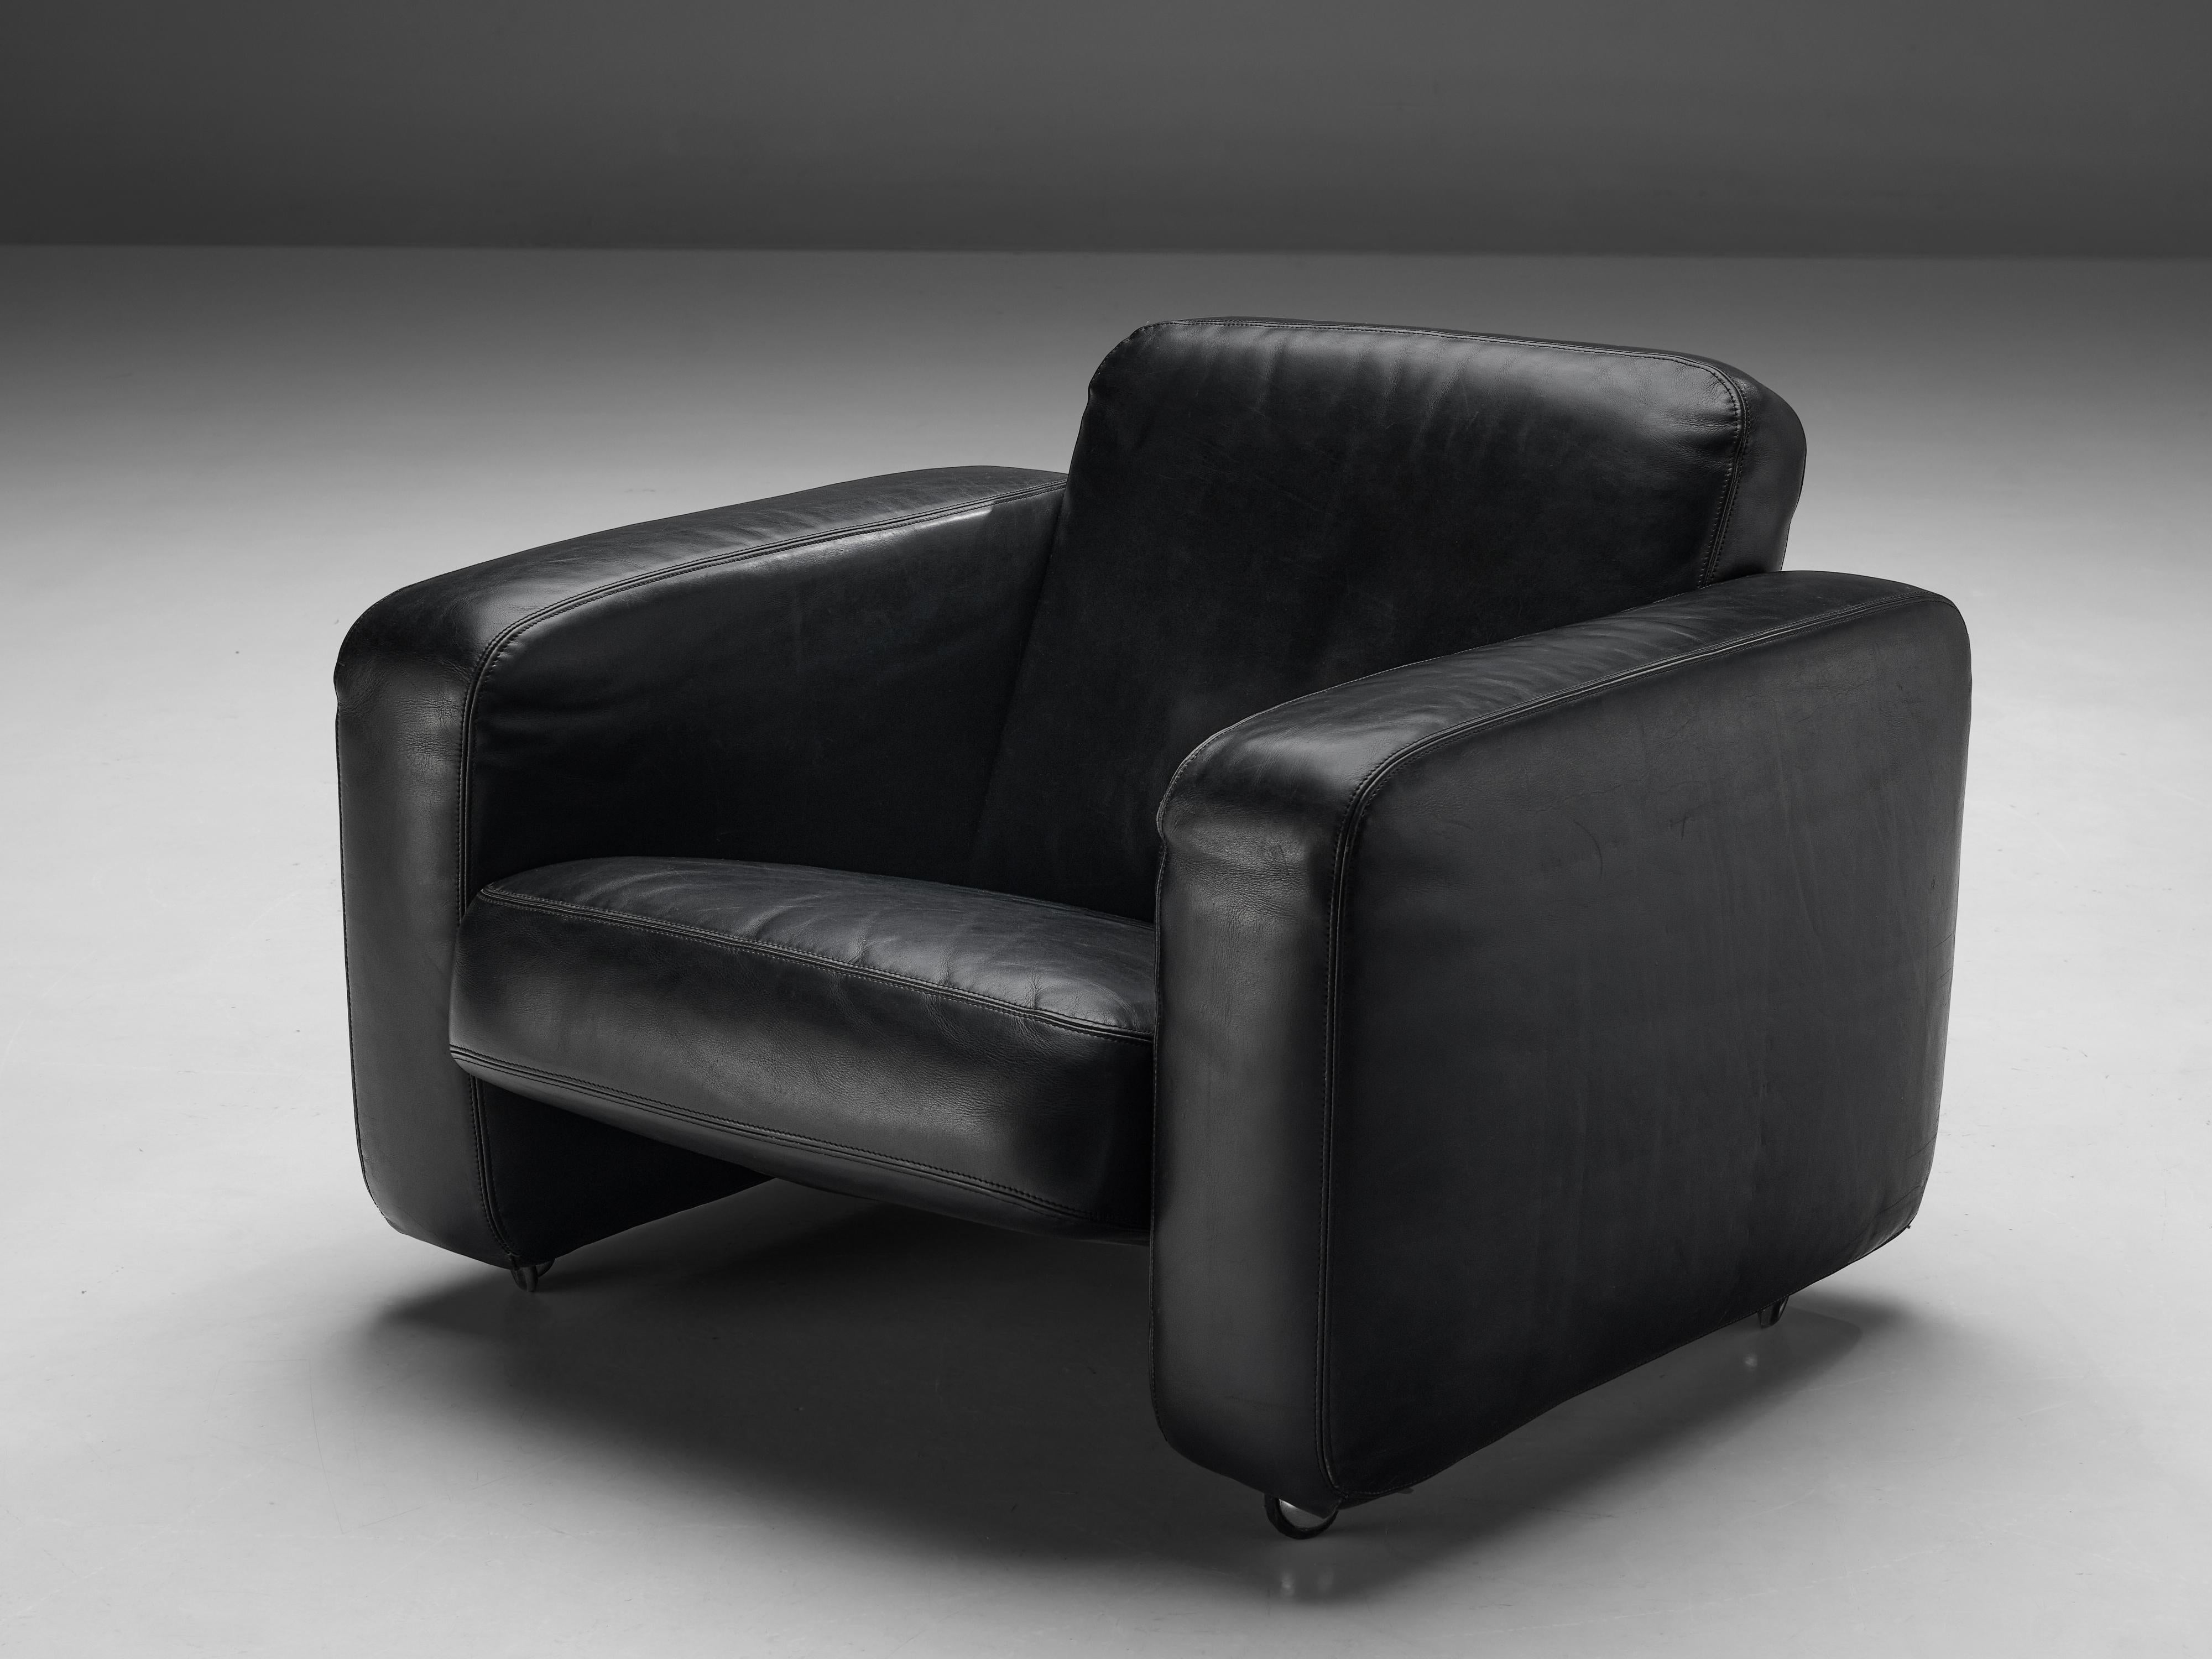 Chaise longue, cuir, Italie, 1970

Ce fauteuil de salon mobile est entièrement recouvert d'un cuir épais de haute qualité qui se patine merveilleusement bien au fil des ans. La forme ronde des coussins souligne la douceur de ce design et son